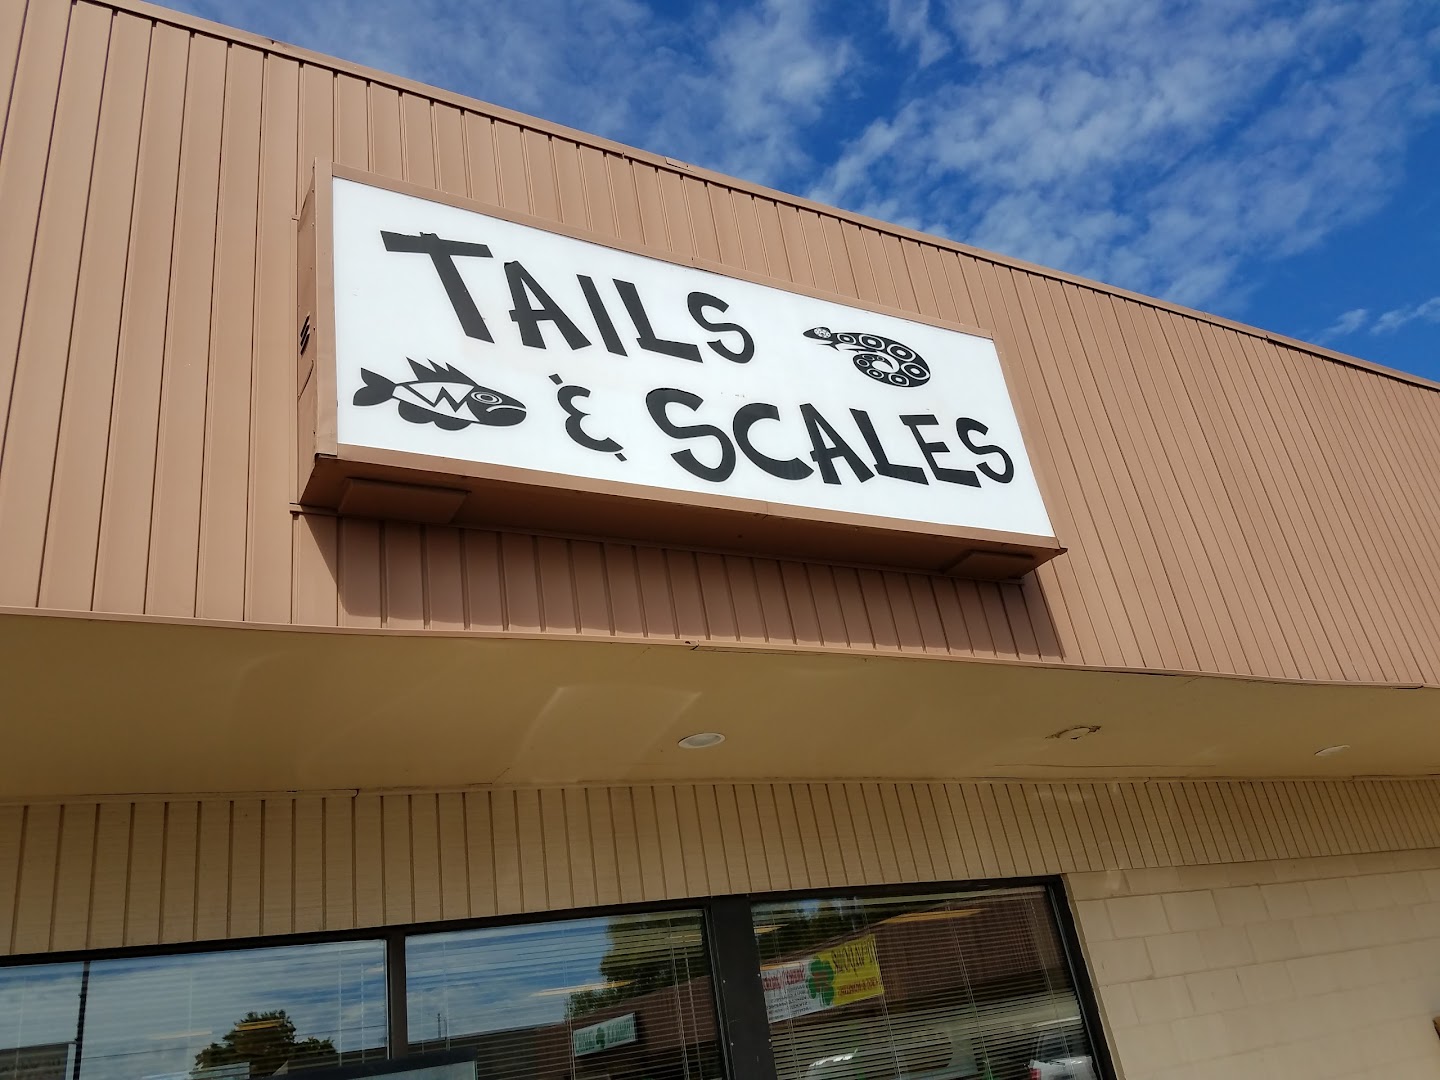 Tails & Scales Pet Shop